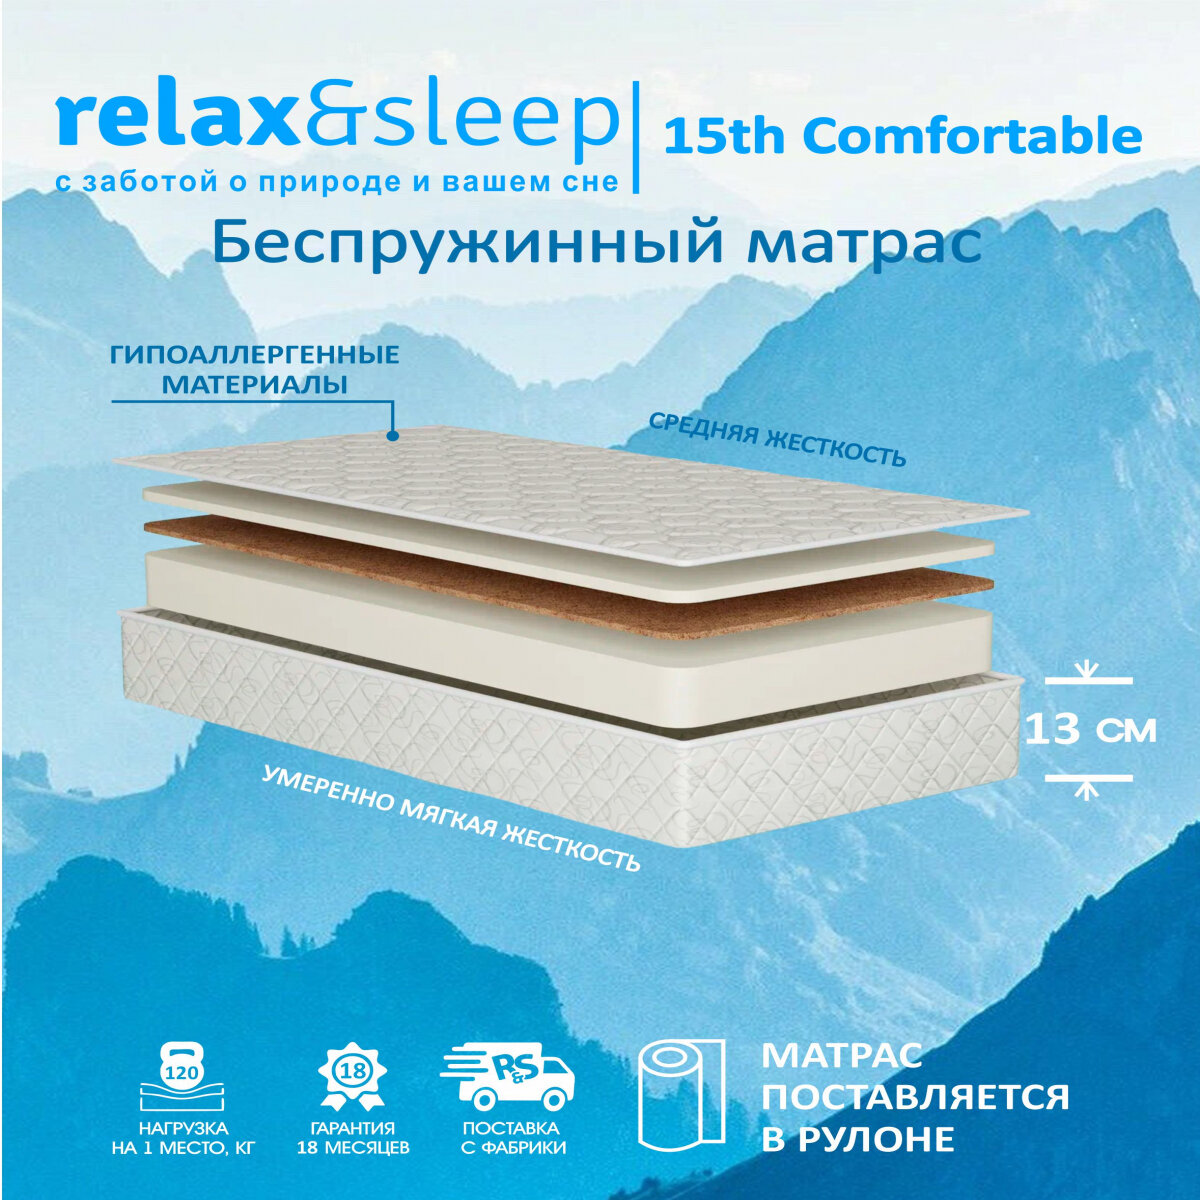 Матрас Relax&Sleep ортопедический беспружинный 15h Comfortable (70 / 180)